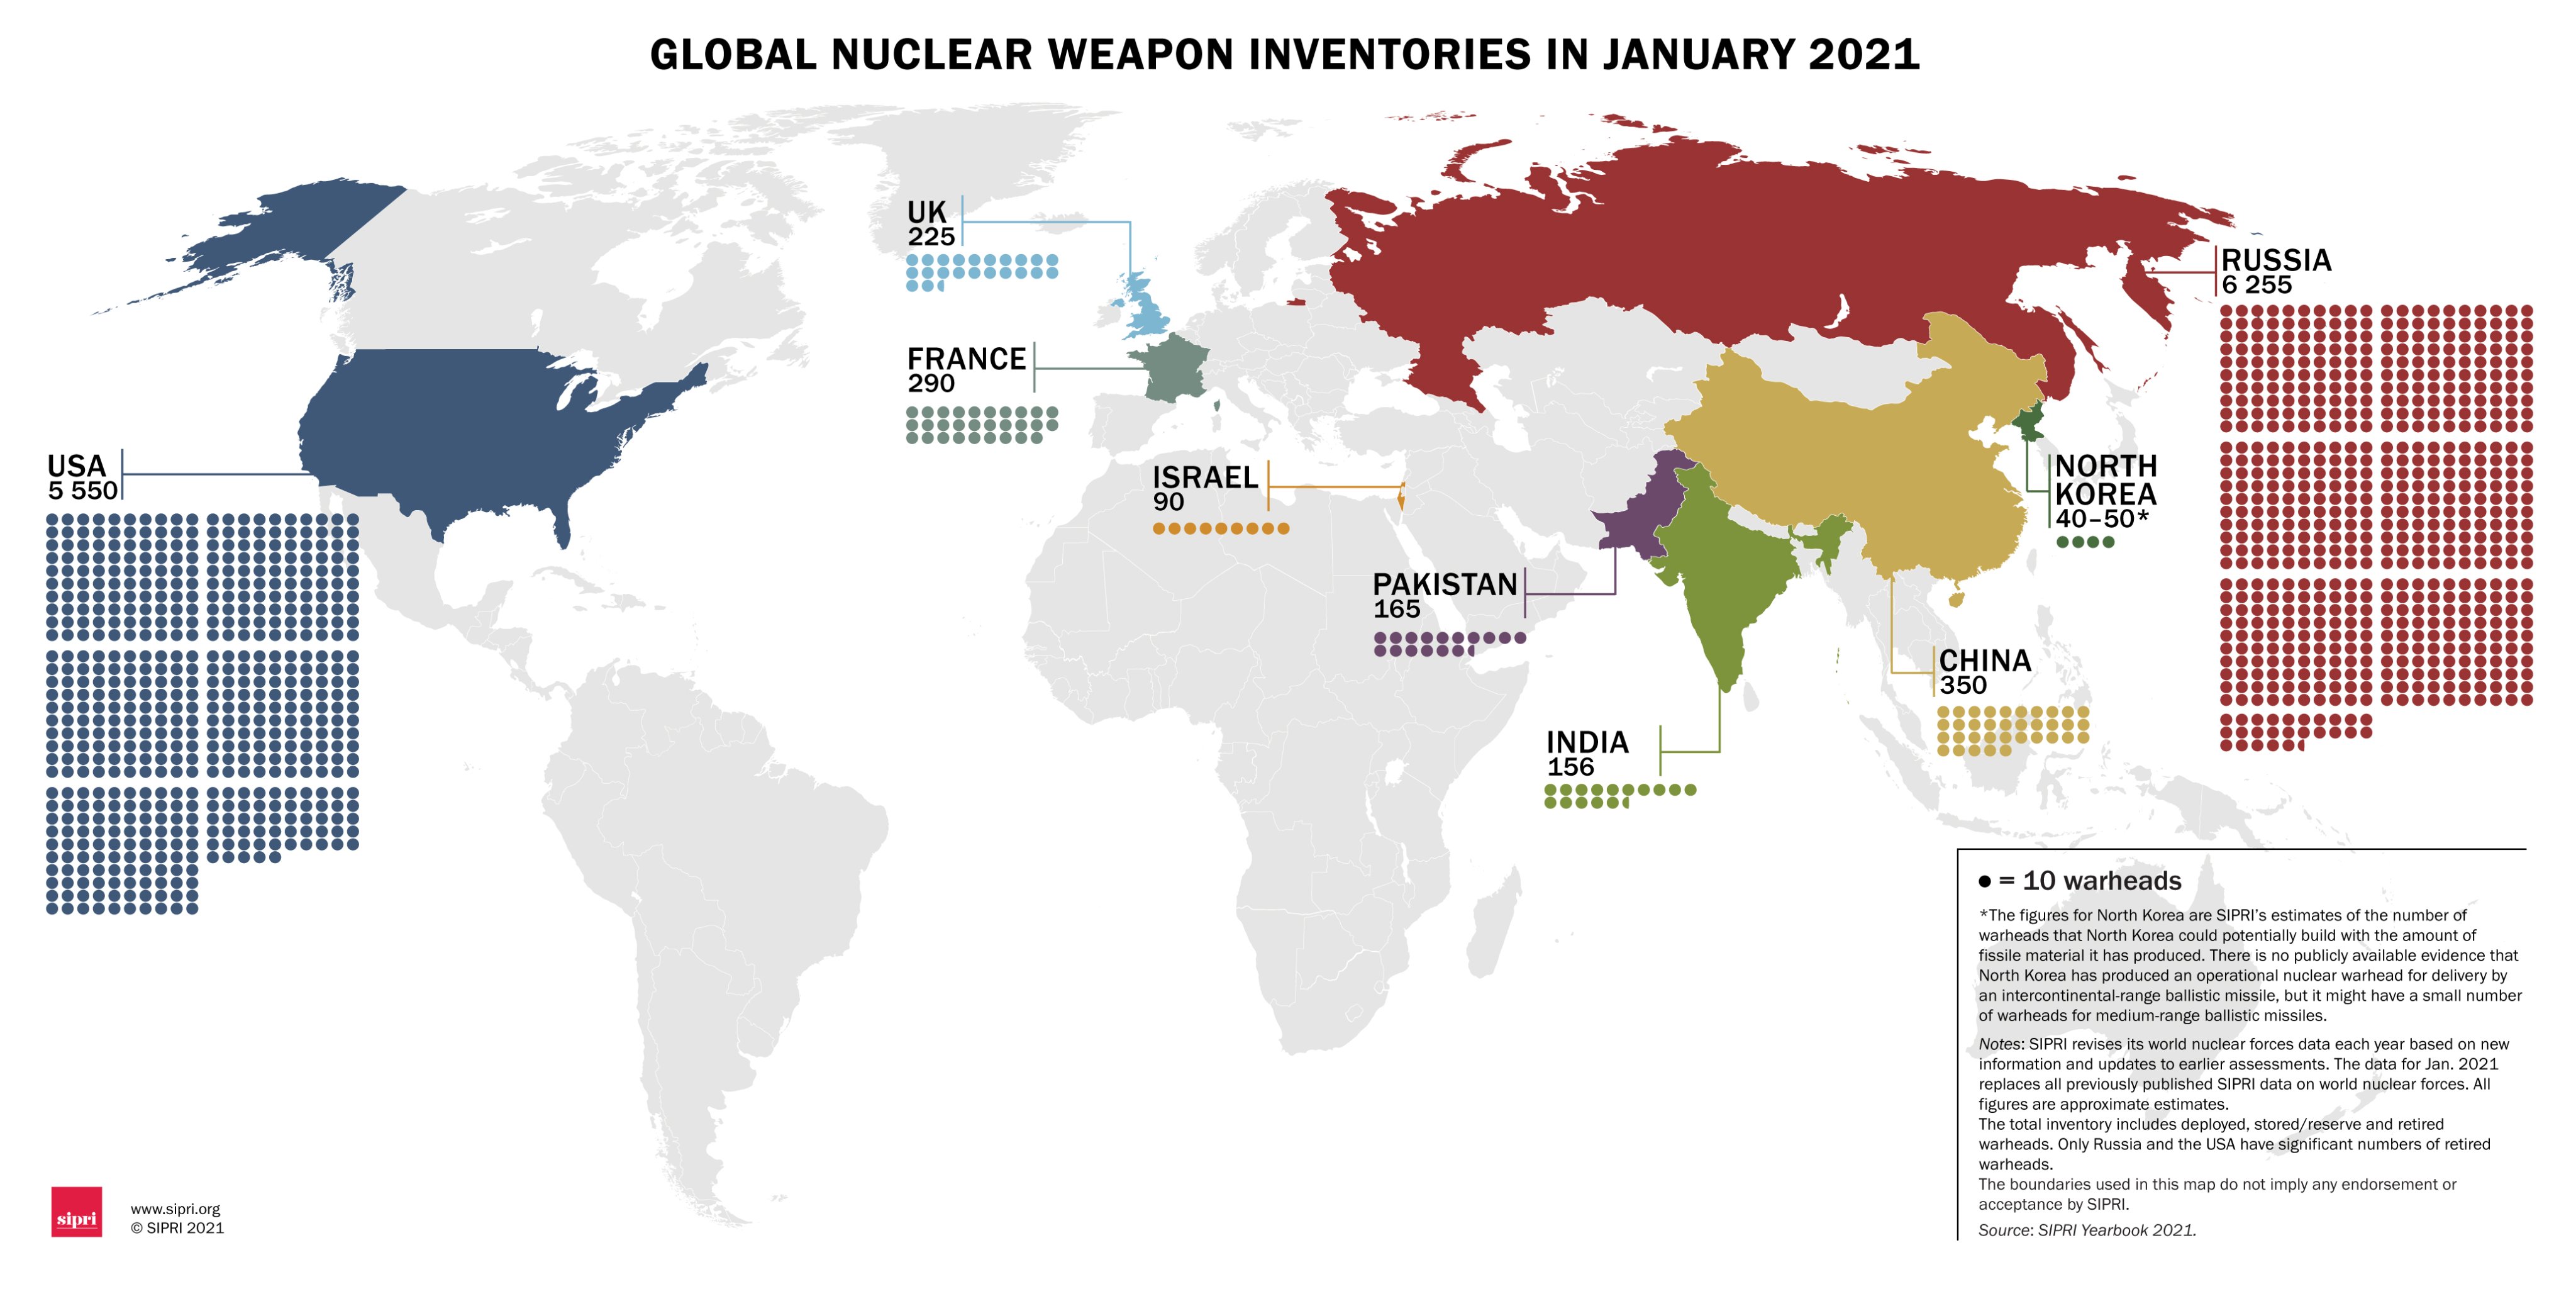 Карта стран с ядерным оружием